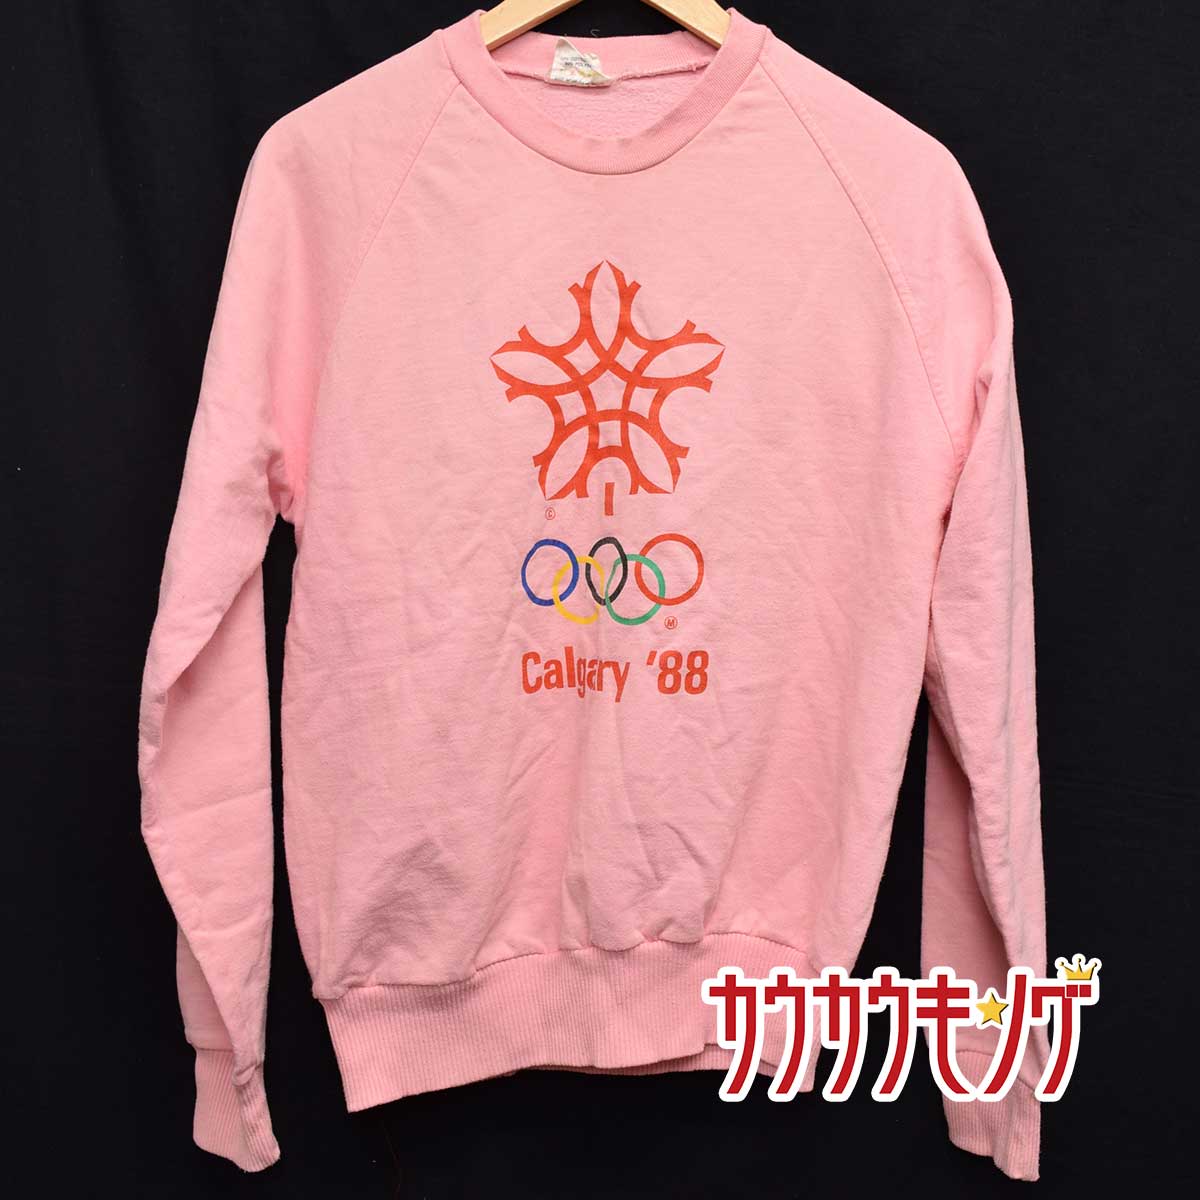 【中古】1988年 カルガリーオリンピック トレーナー M ピンク メンズ